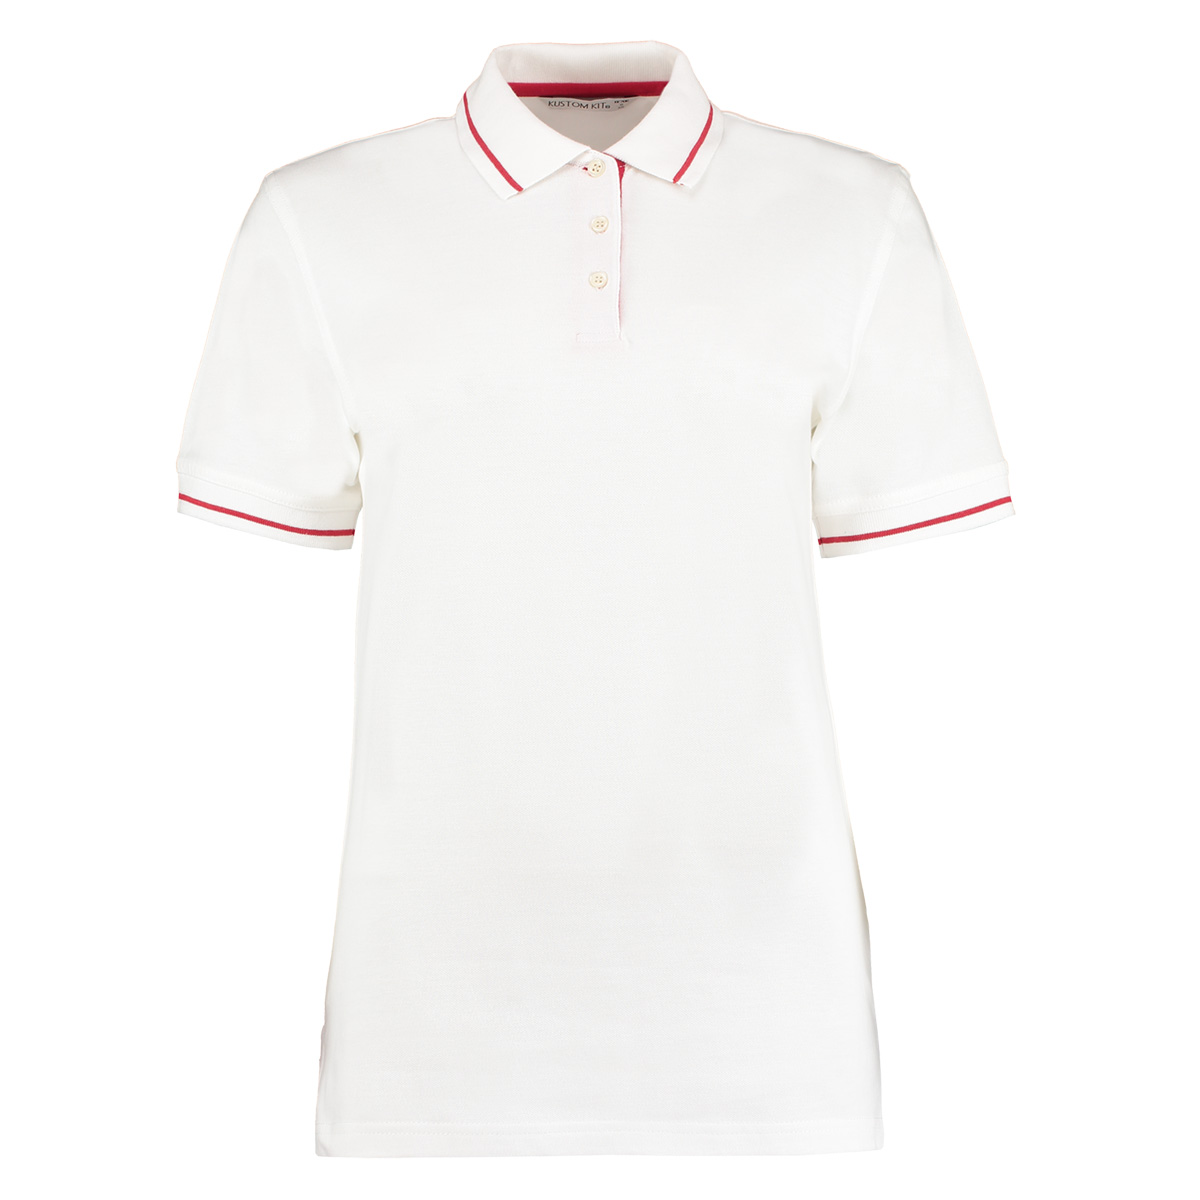 Kustom Kit Ladies St White/Red 12 Mellion Short Sleeve Polo Shirt